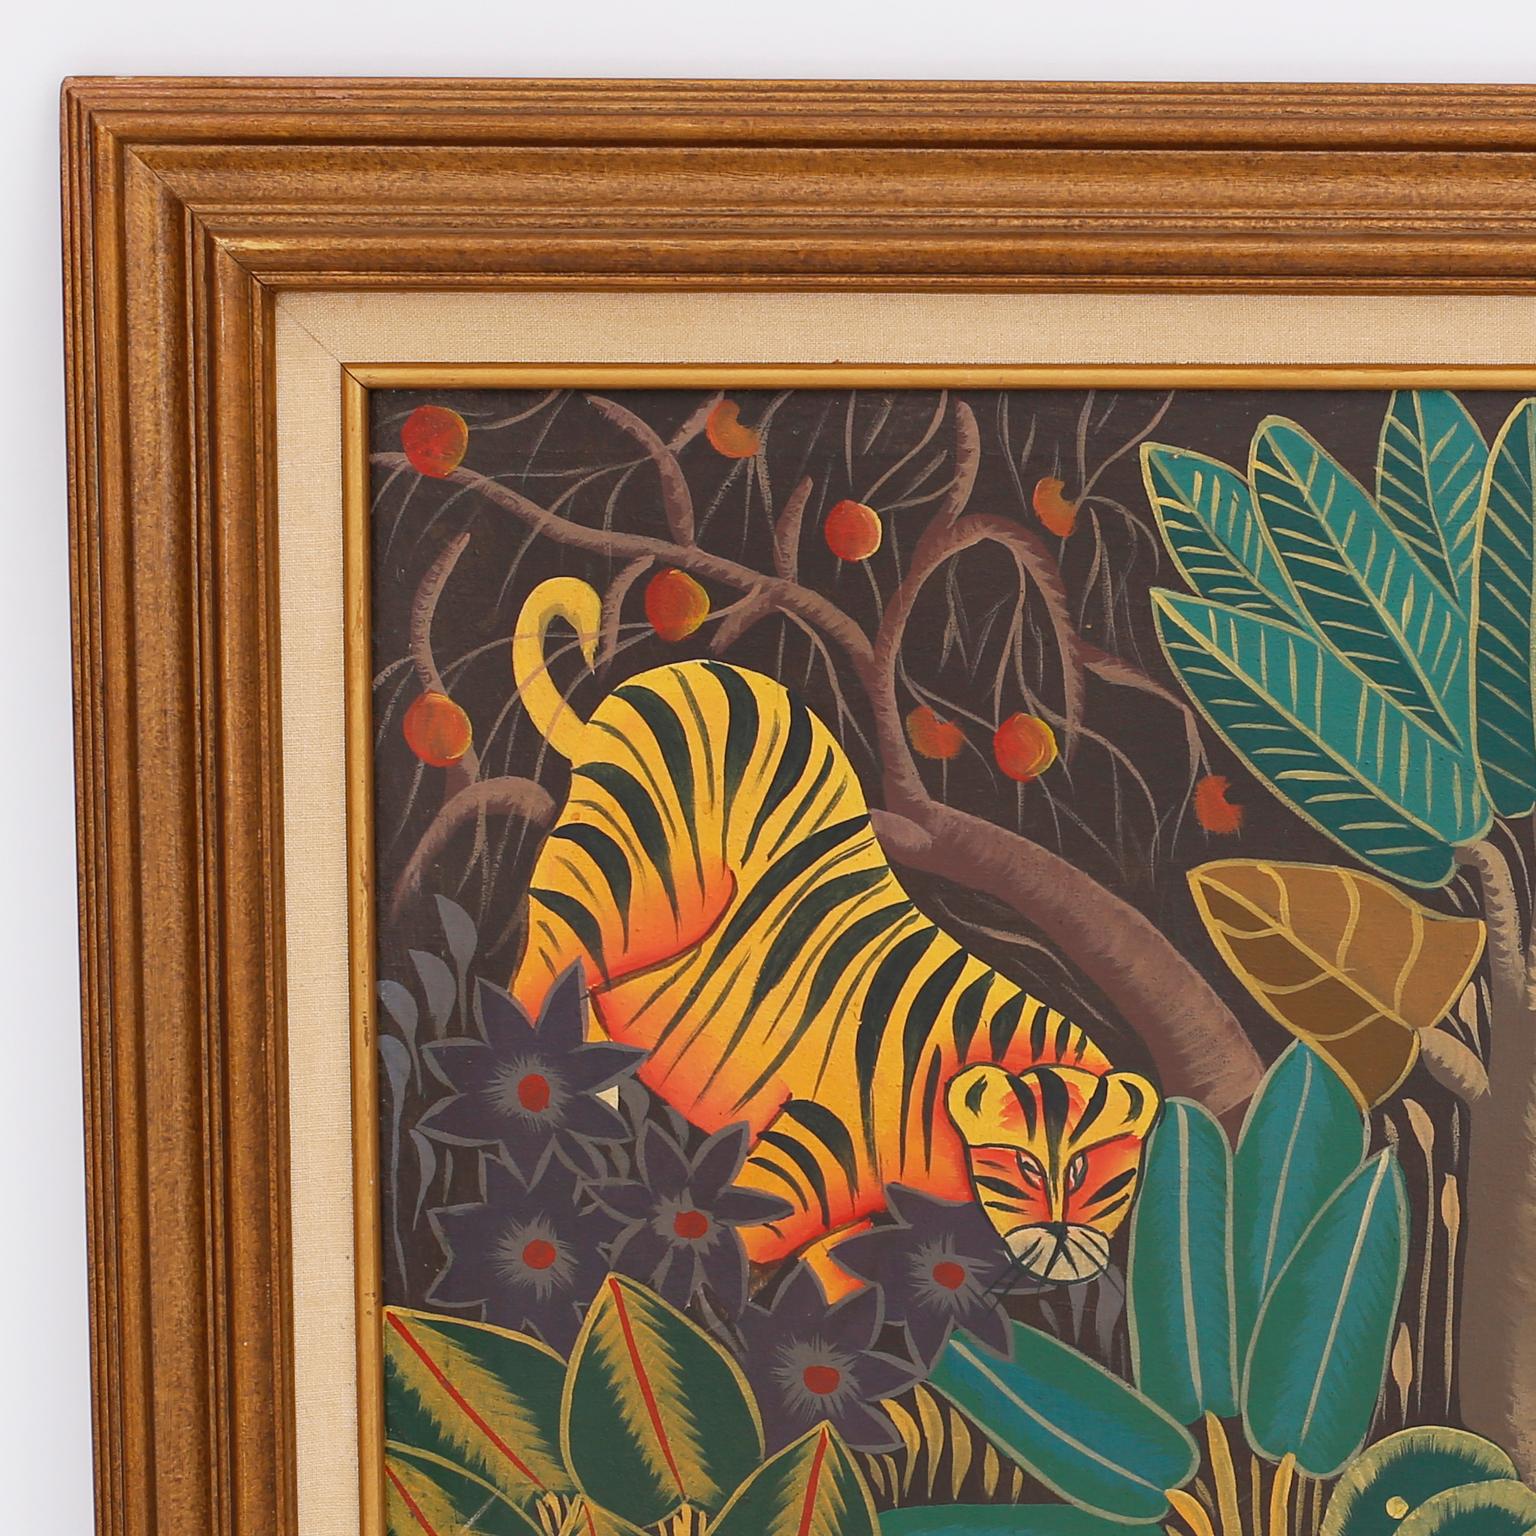 Peinture à l'huile fantaisiste sur toile représentant des tigres et des éléphants dans un décor de jungle stylisé, dans un style naïf et folklorique typique des artistes haïtiens. Signé Yvon en bas et présenté dans un cadre en bois.